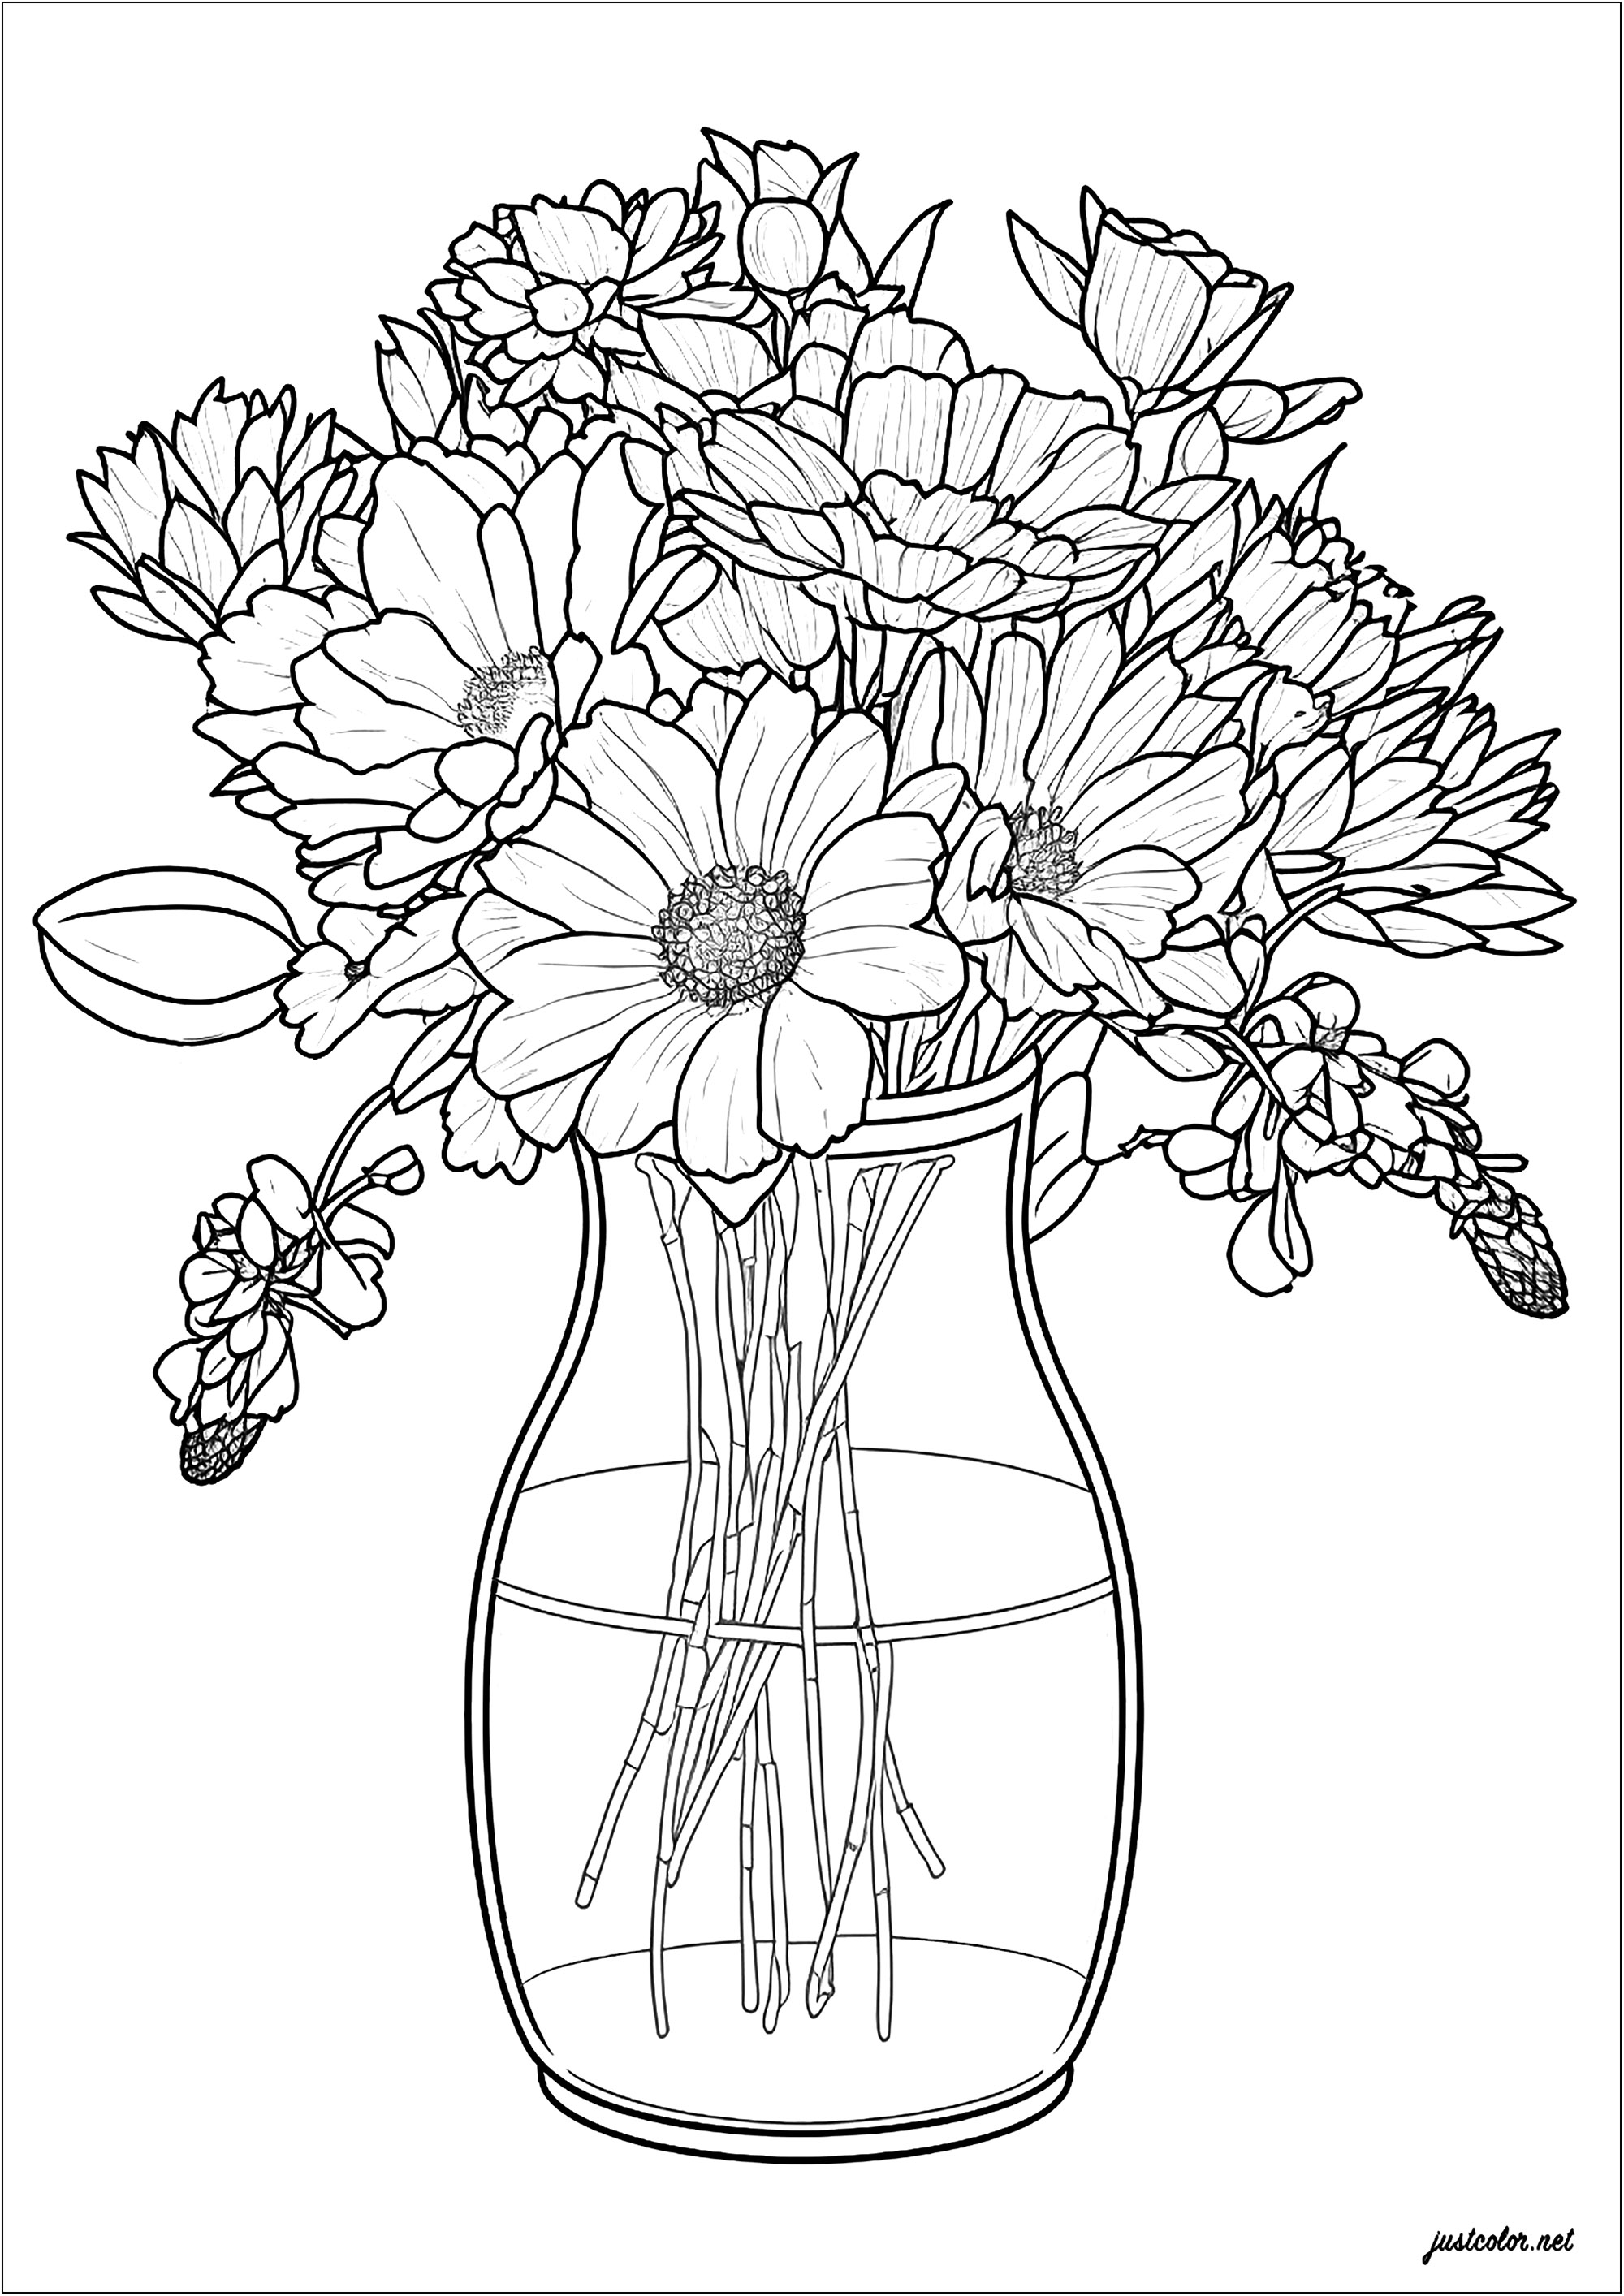 Vaso e flores delicadas. Um bonito desenho com linhas finas, representando belas flores elegantemente dispostas numa jarra de vidro. Uma excelente forma de passar um momento agradável criando algo único e belo.